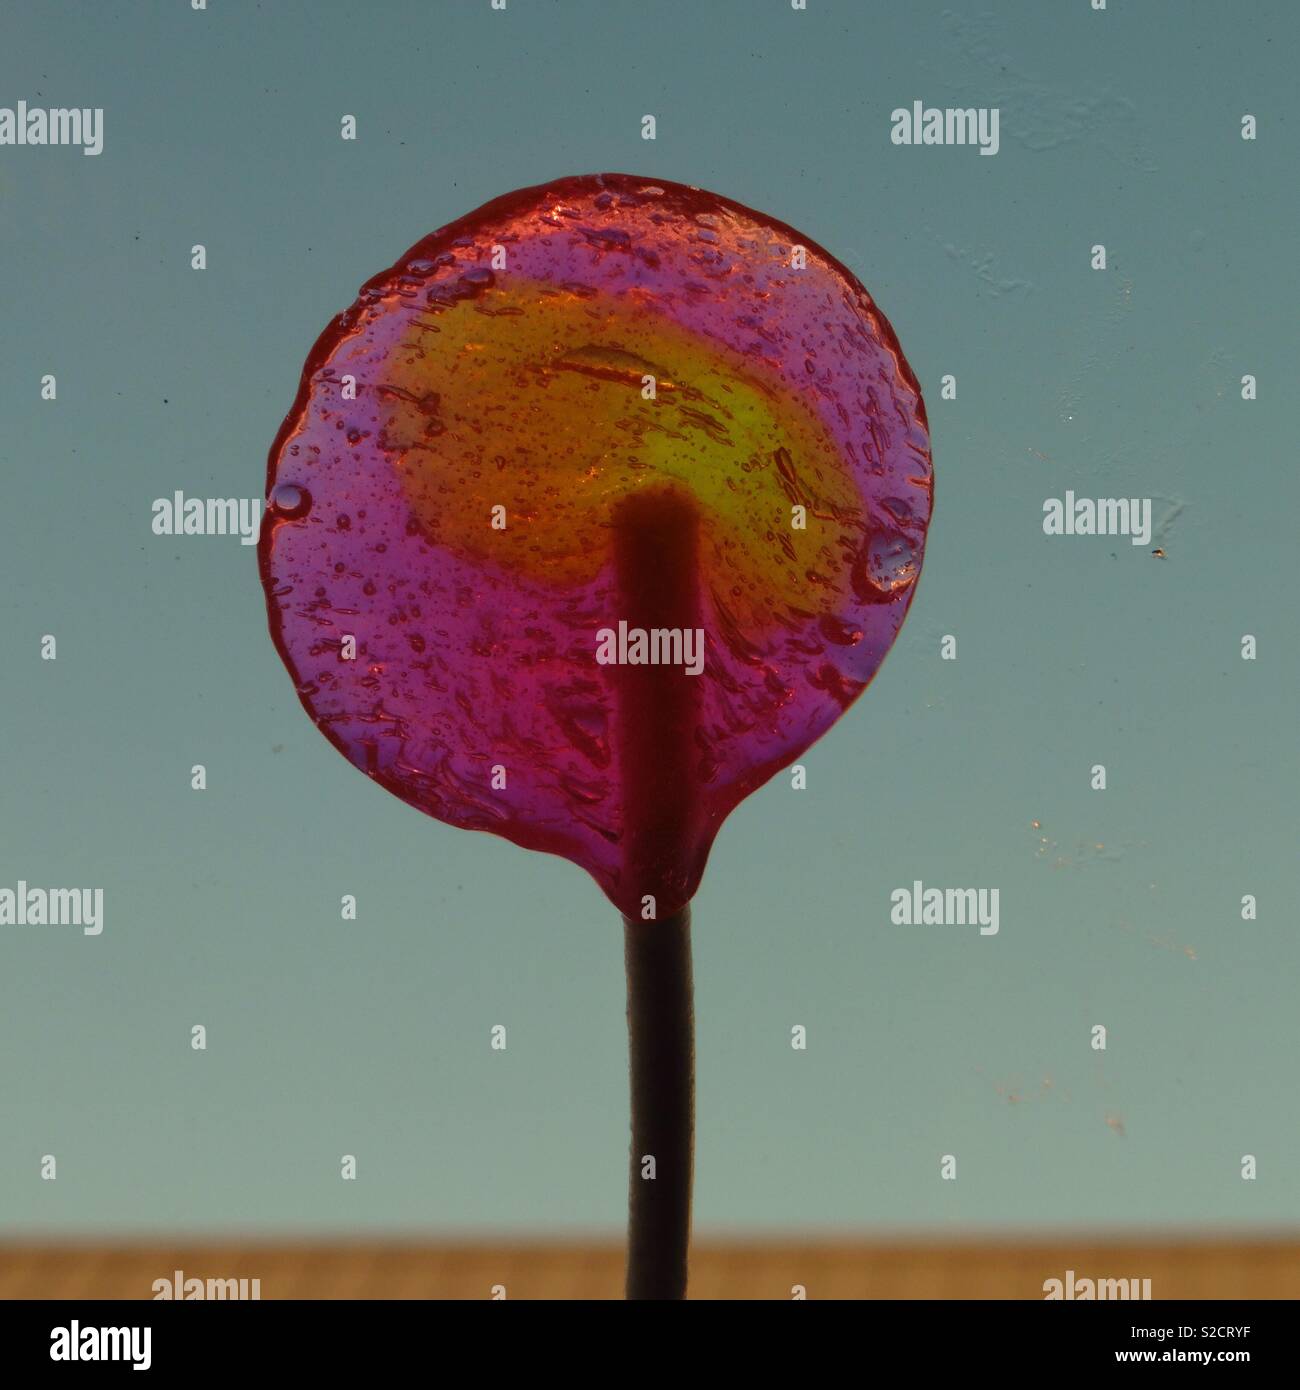 A colorful partially eaten lollipop Stock Photo